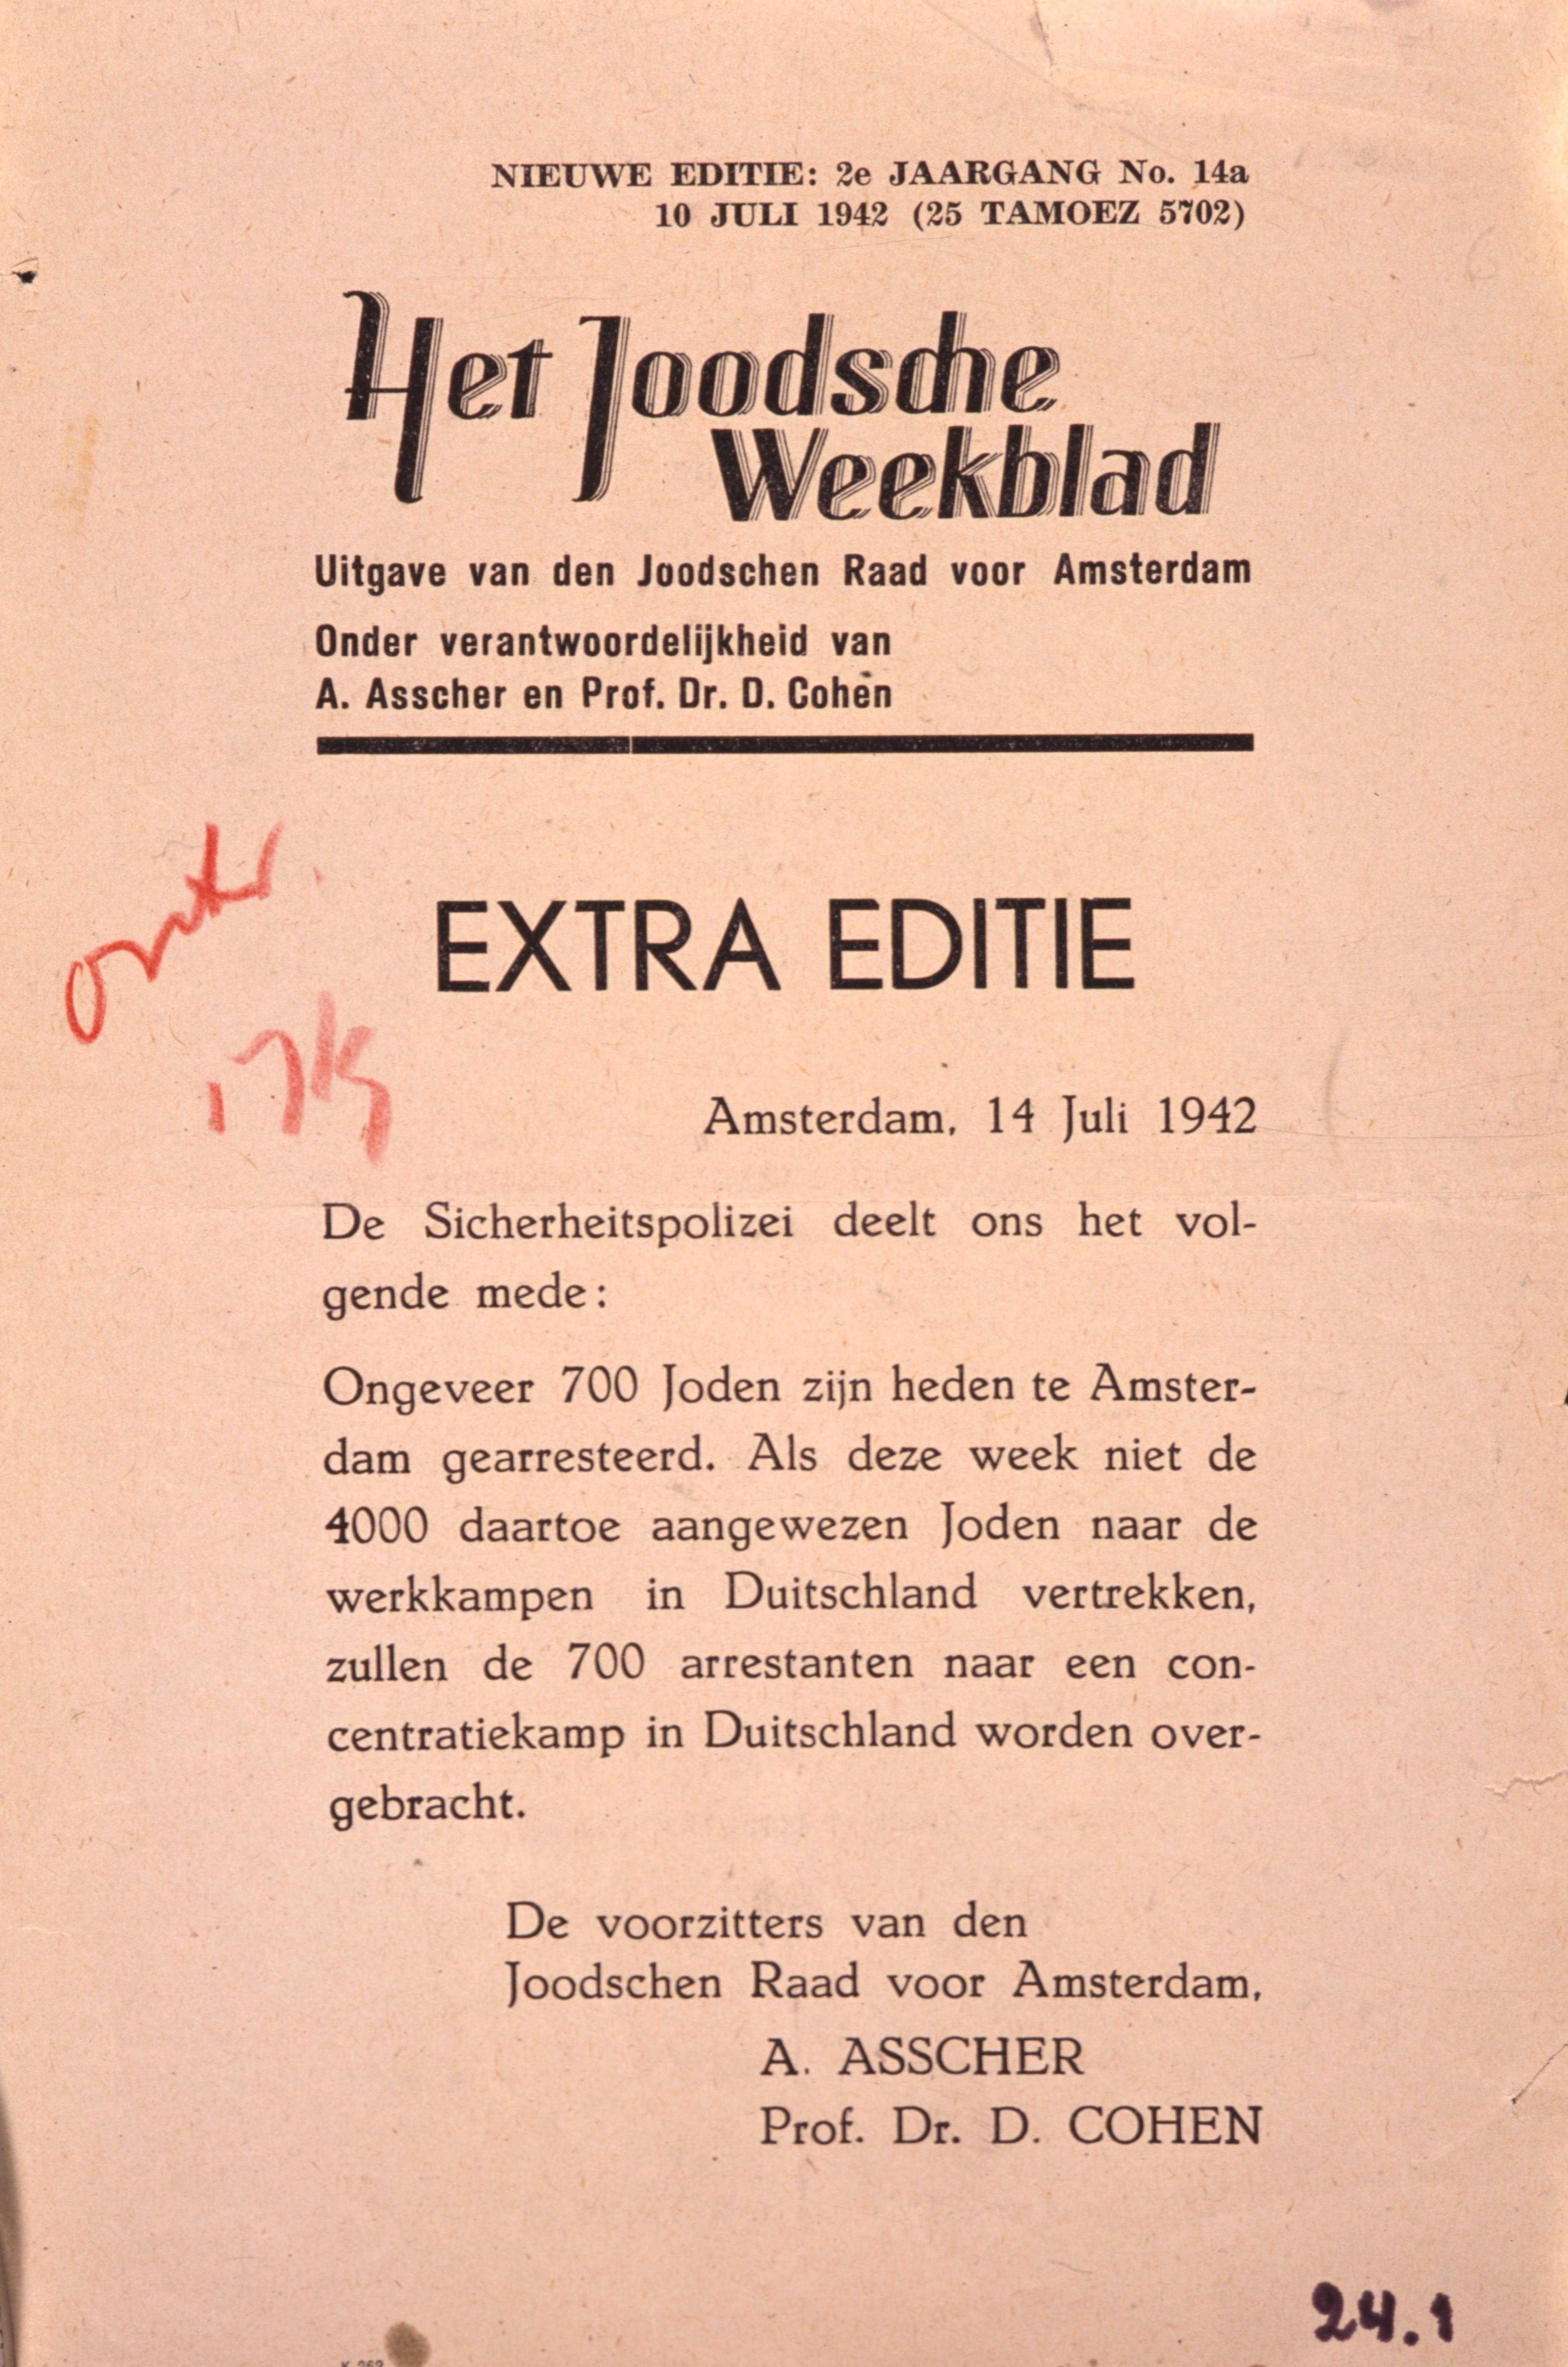 Het Joodsche Weekblad, extra editie van 14 juli 1942 met de oproep dat 4000 joden zich voor vetrek naar Duitsland moeten melden op straffe van represaille tegen 700 anderen. Collectie NIOD.